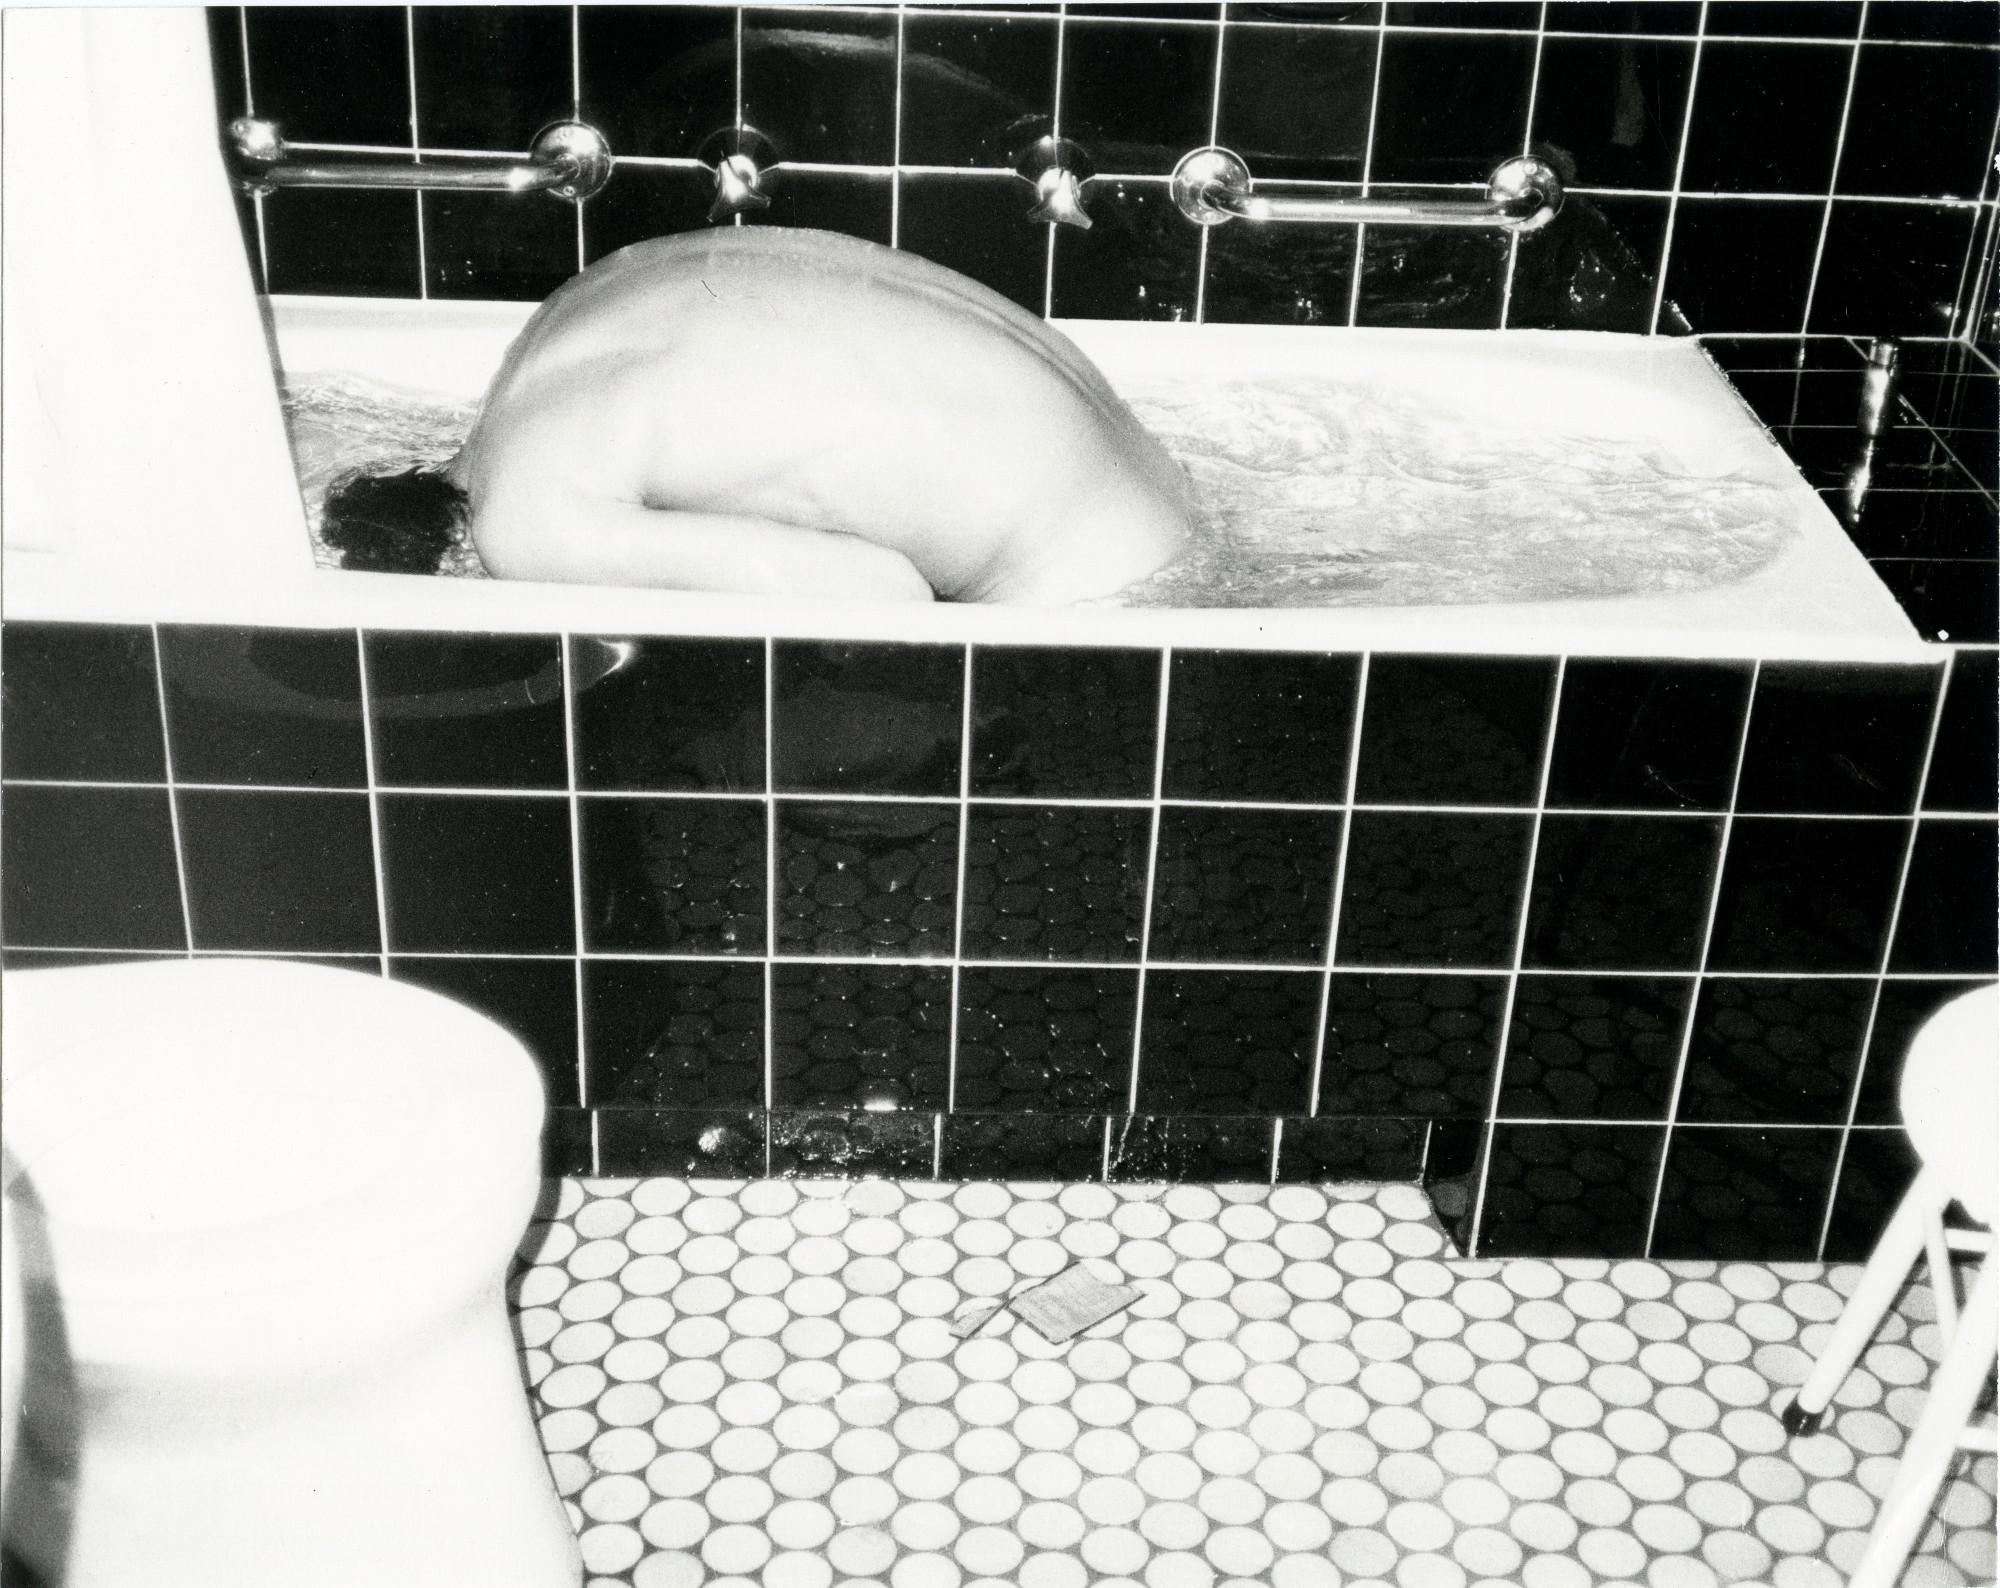 Nude Photograph Andy Warhol - Modèle masculin nu dans une baignoire